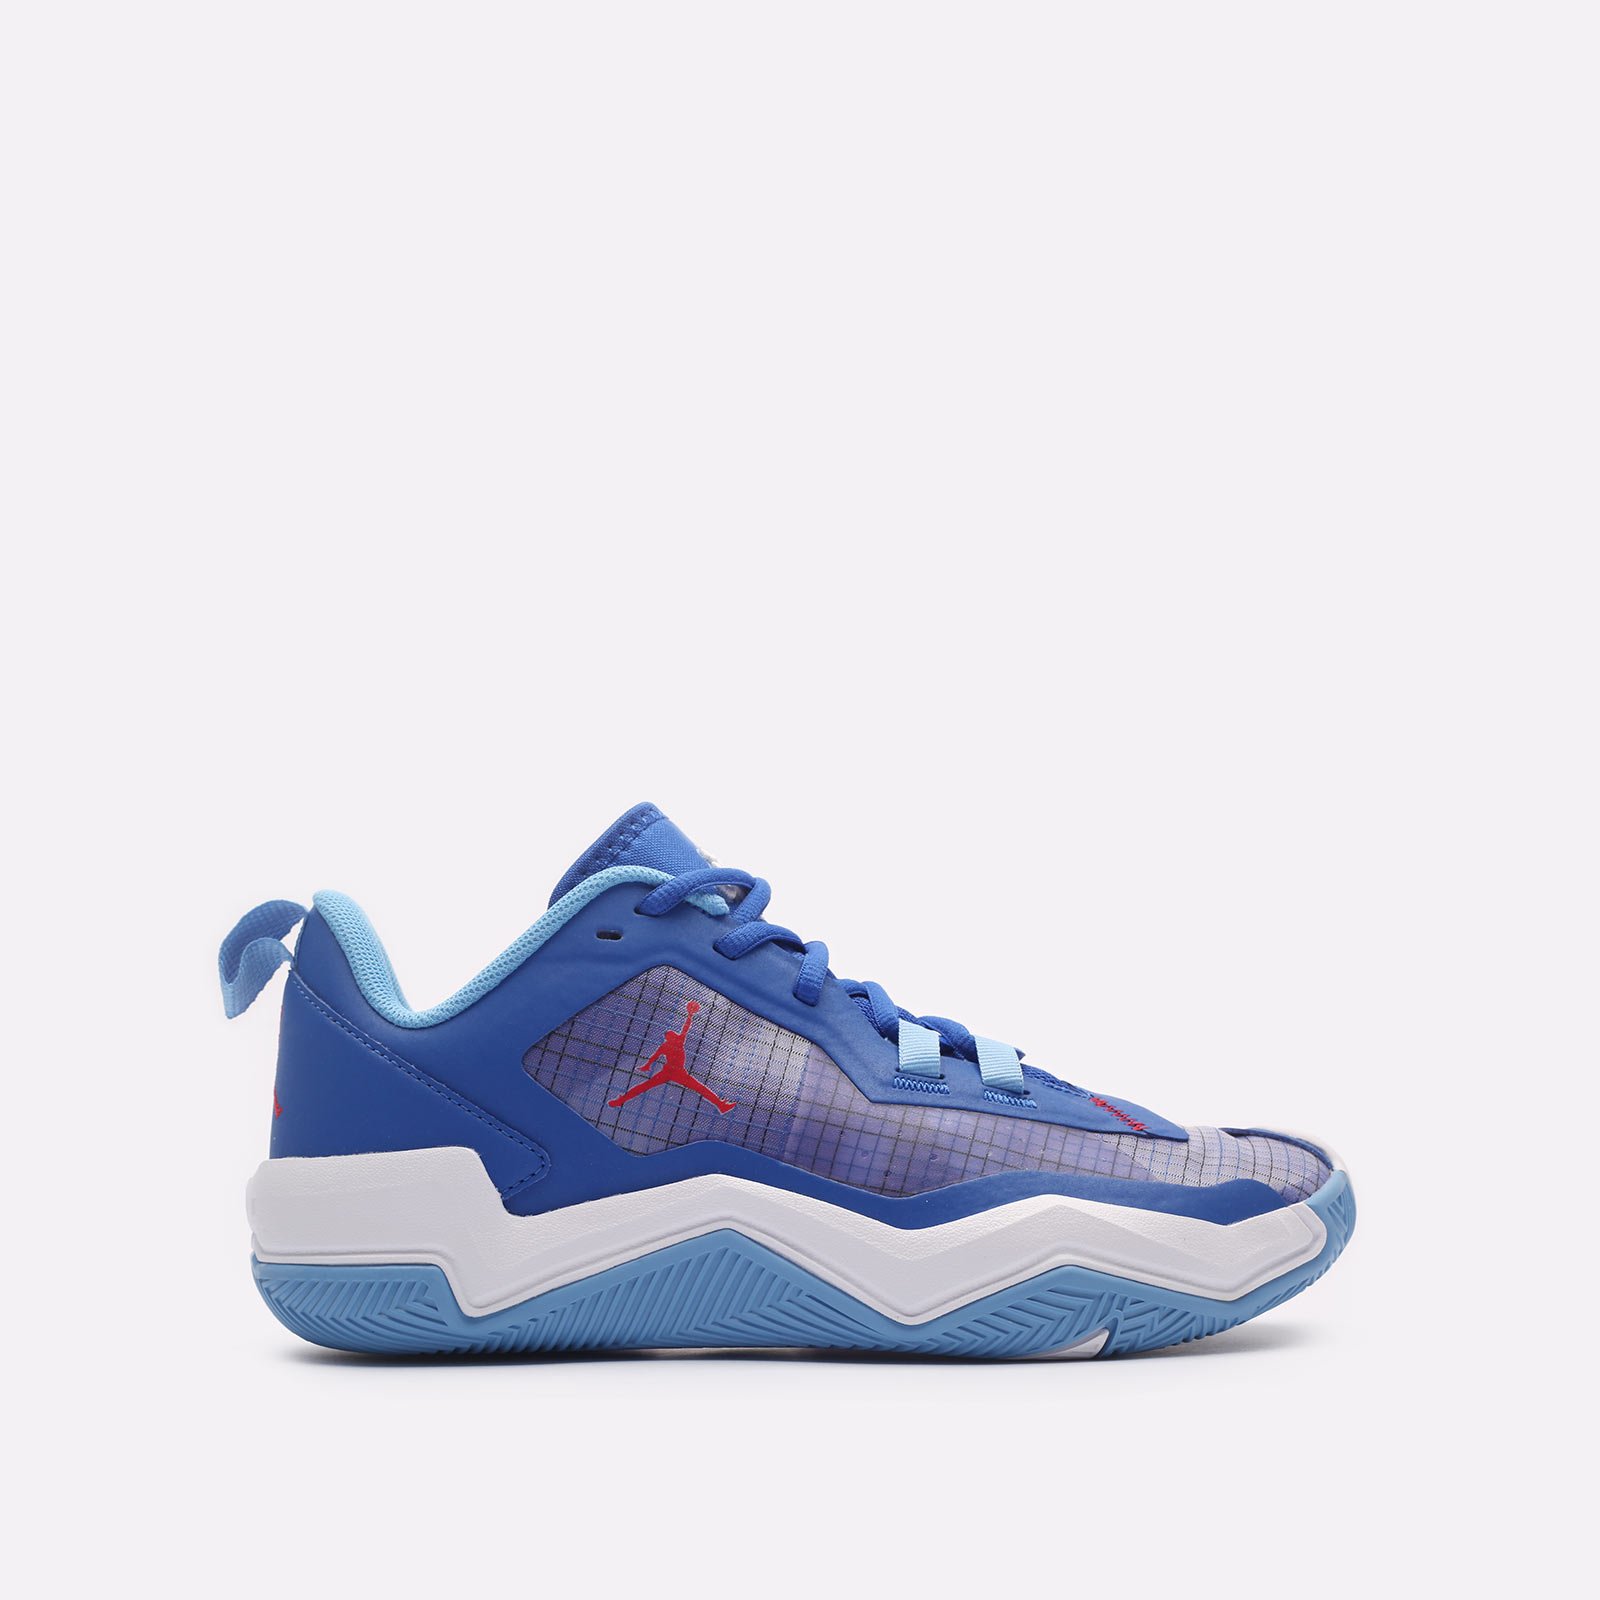 мужские синие баскетбольные кроссовки Jordan One Take 4 DO7193-400 - цена, описание, фото 1